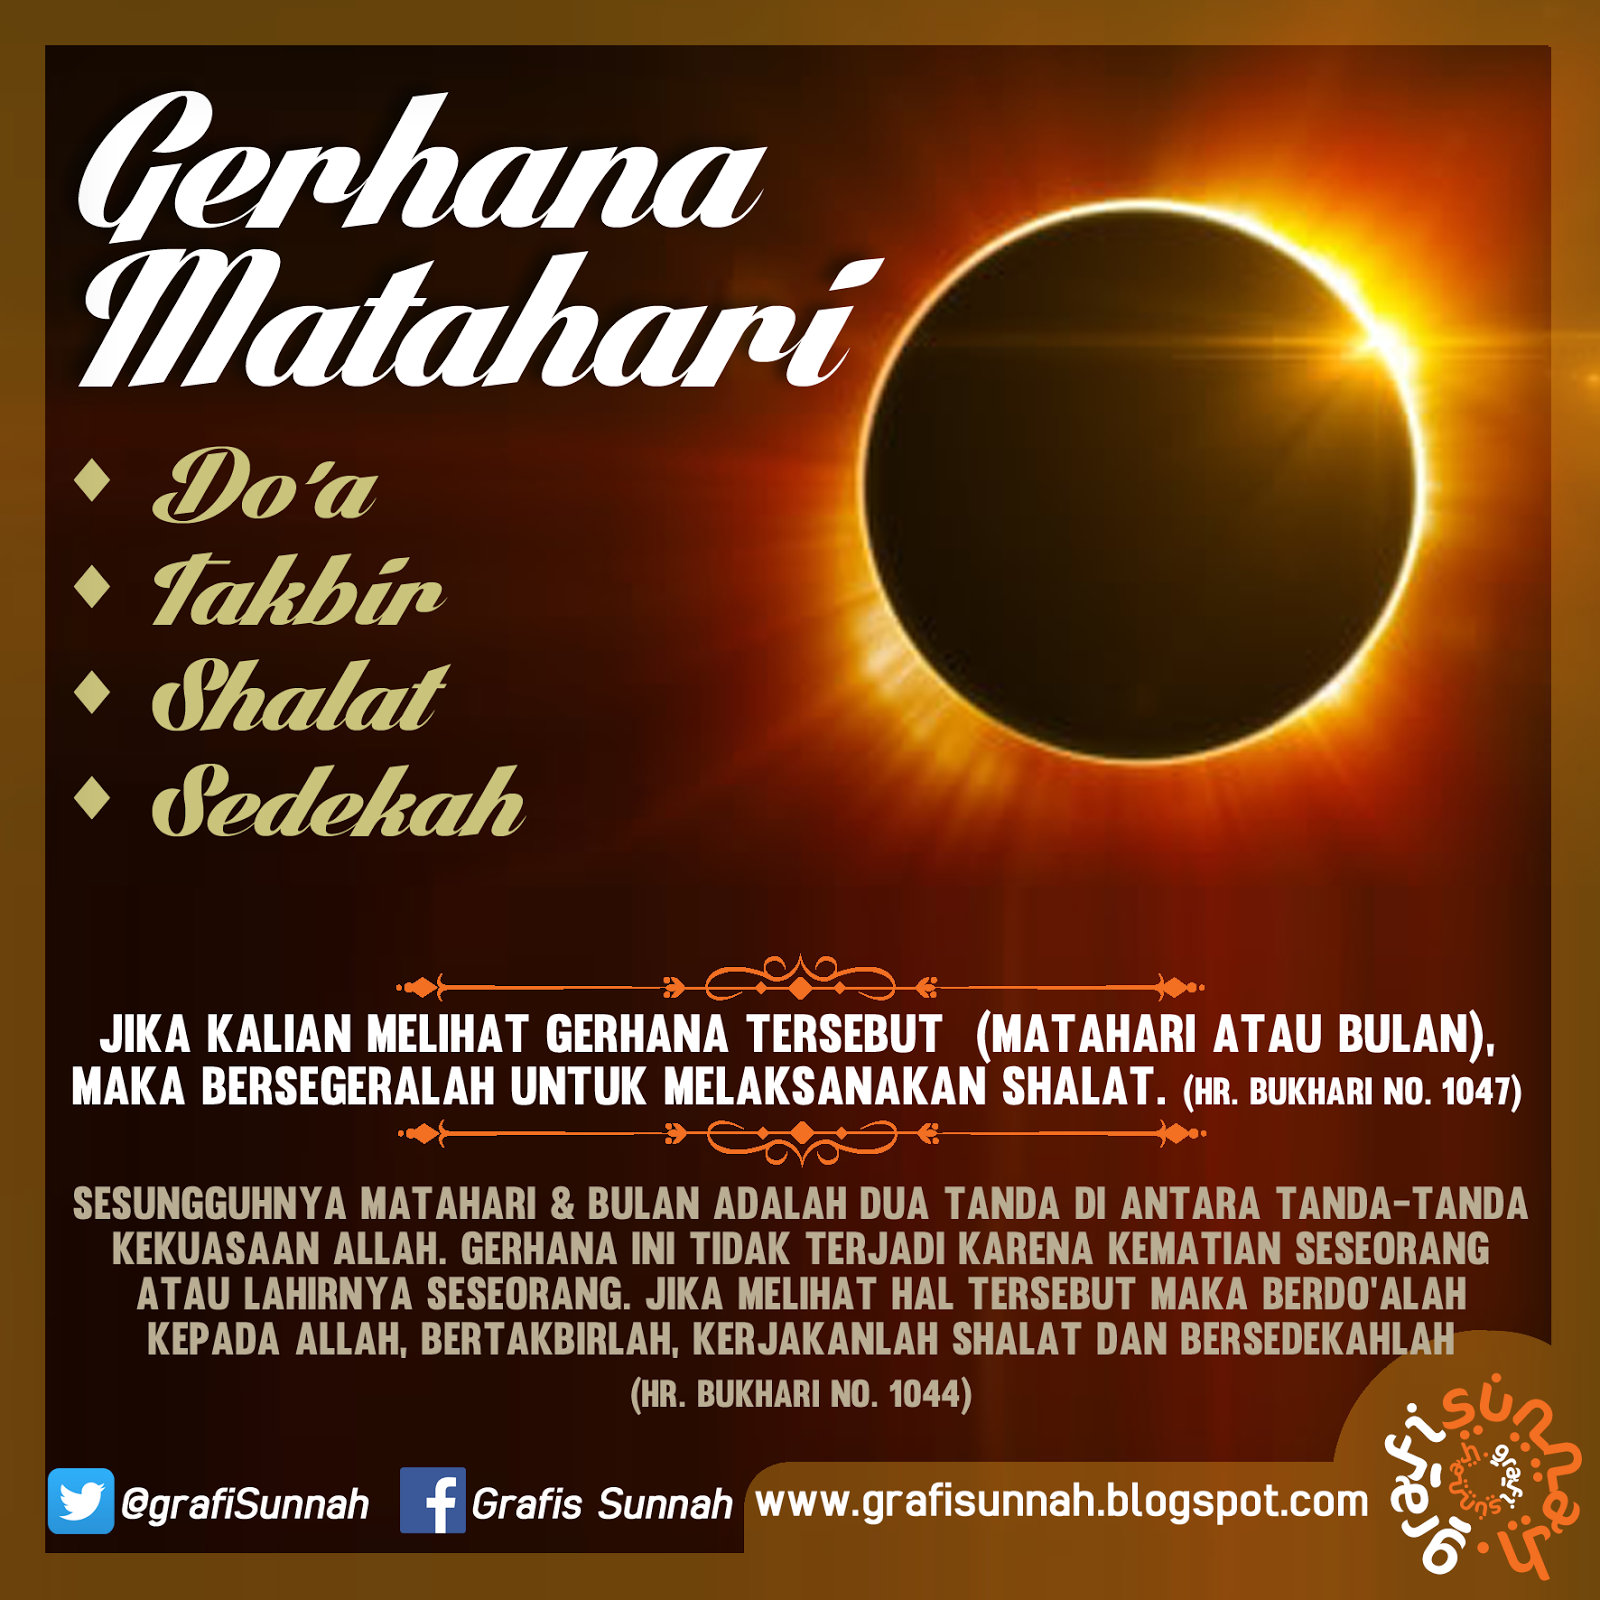 Dp Bbm Gokil Gerhana Matahari Download DP BBM